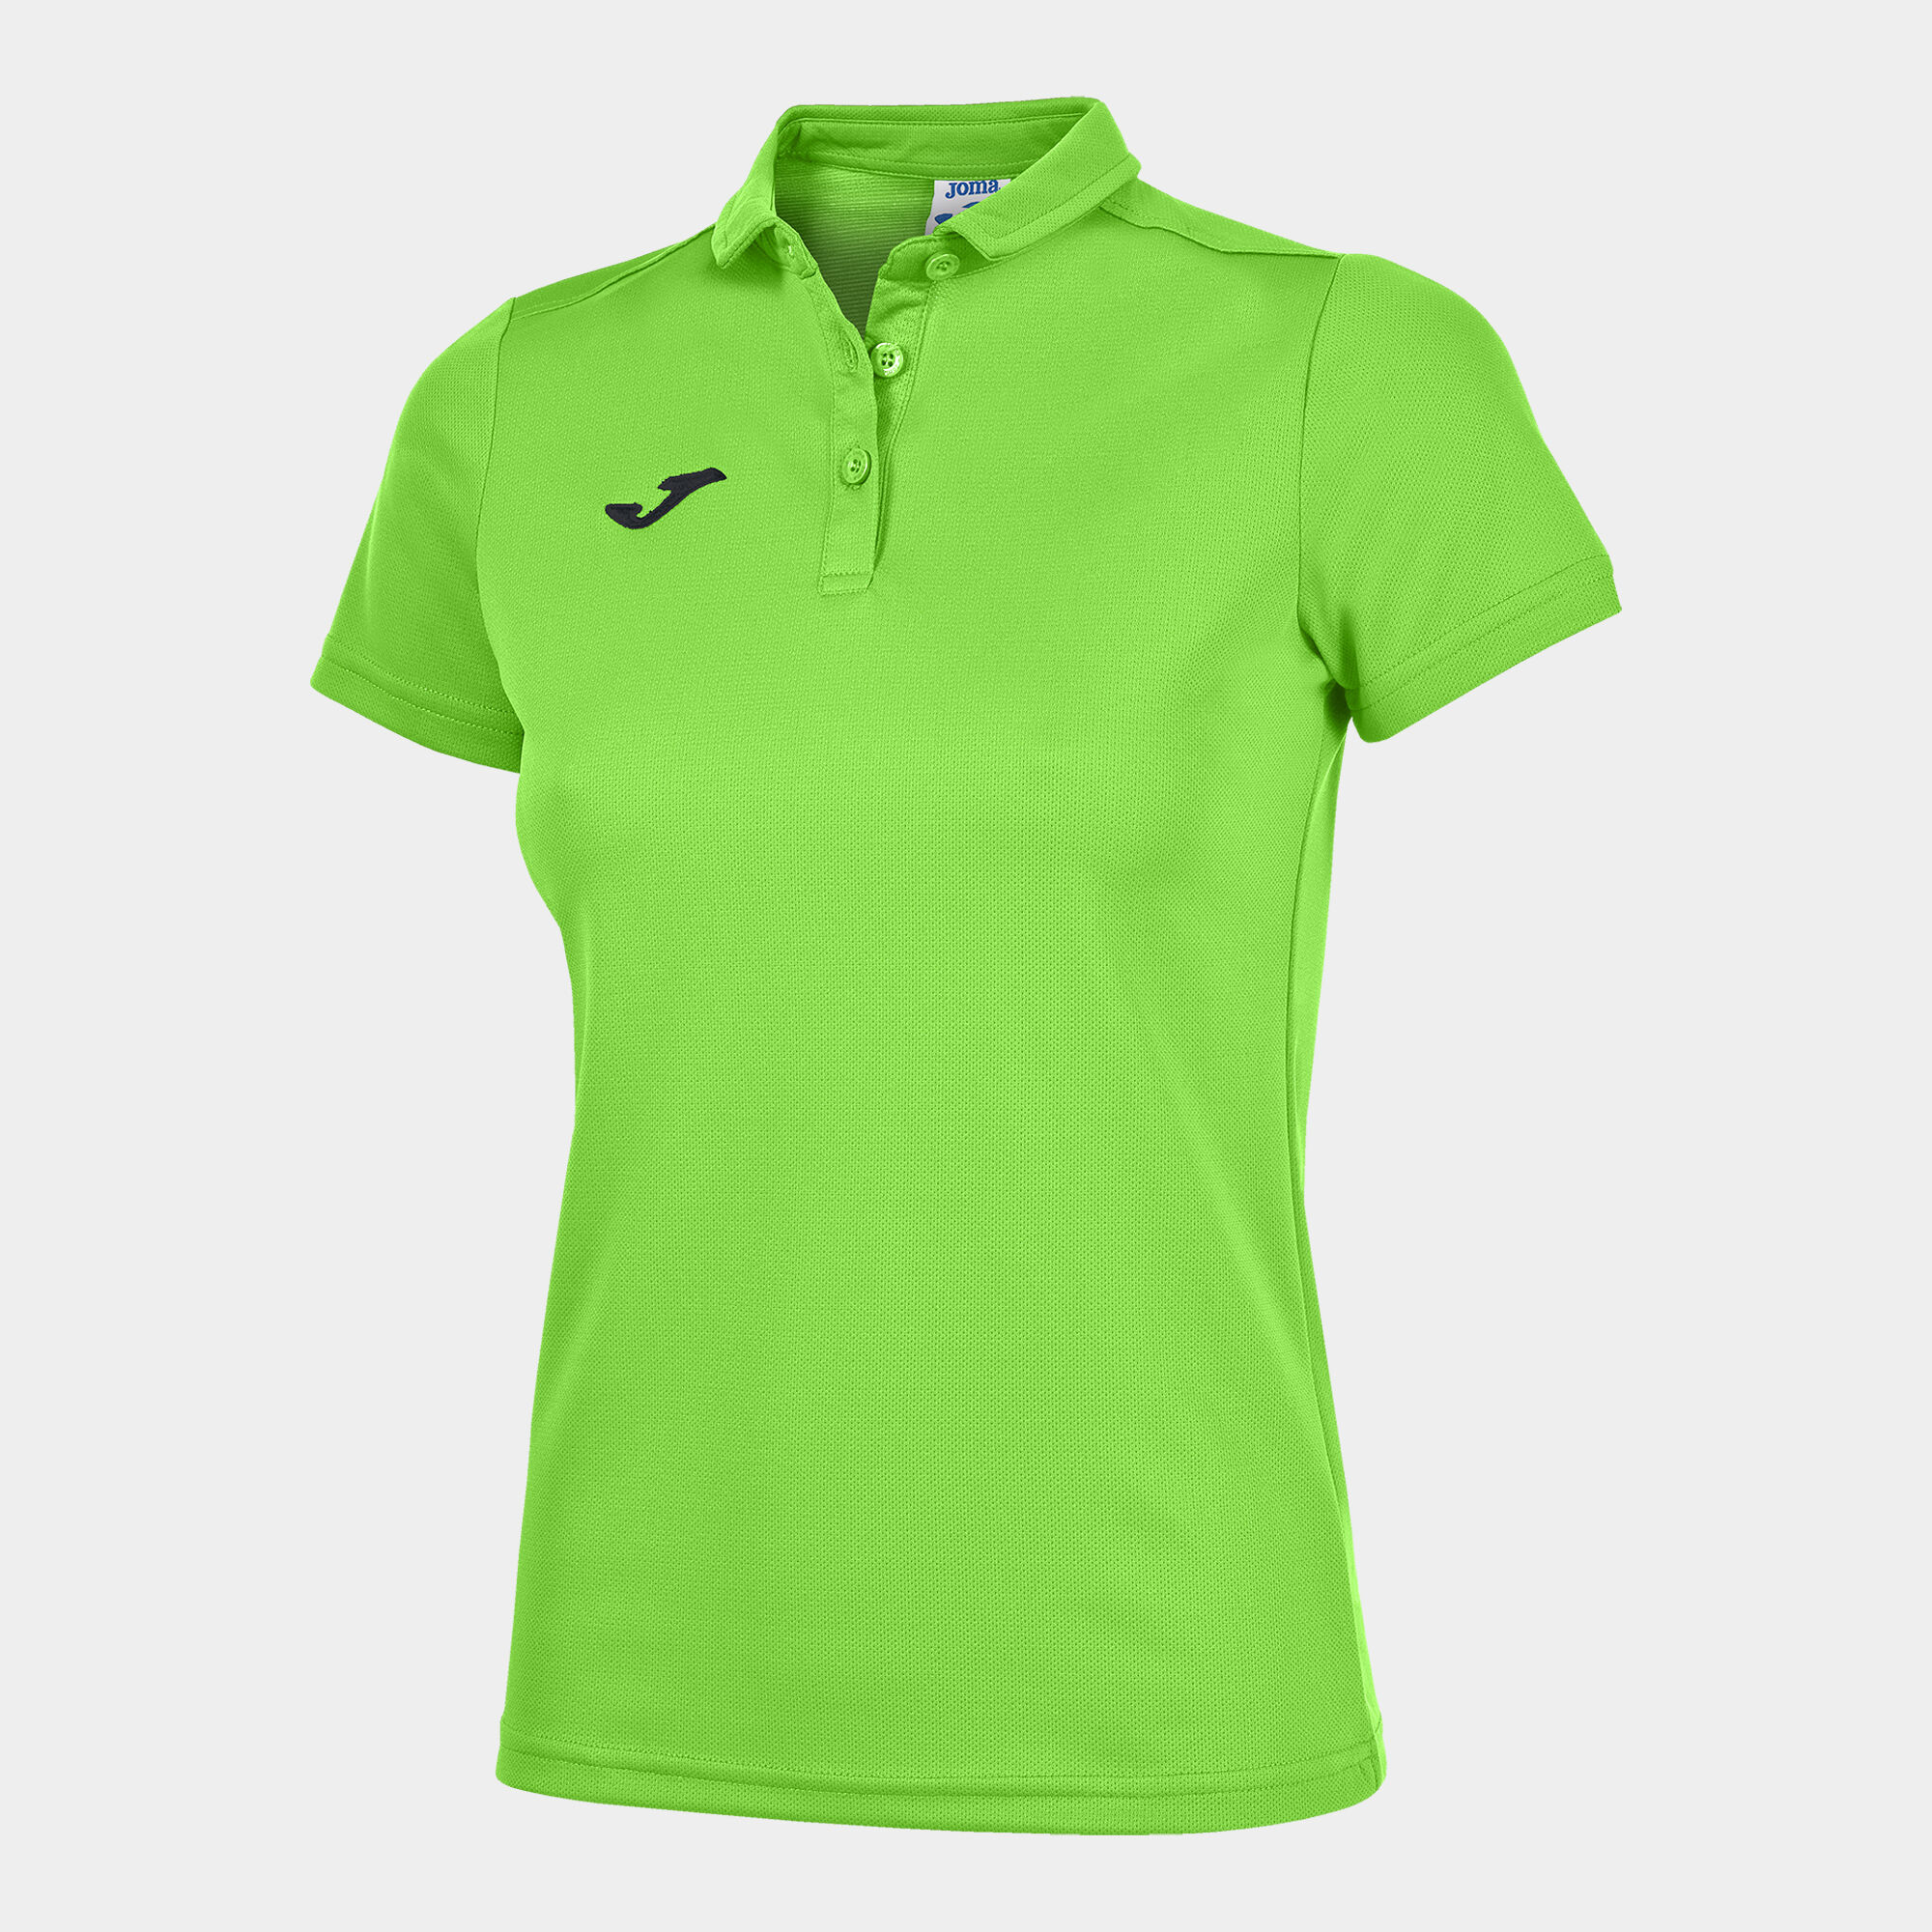 Polo shirt short-sleeve woman Hobby fluorescent green